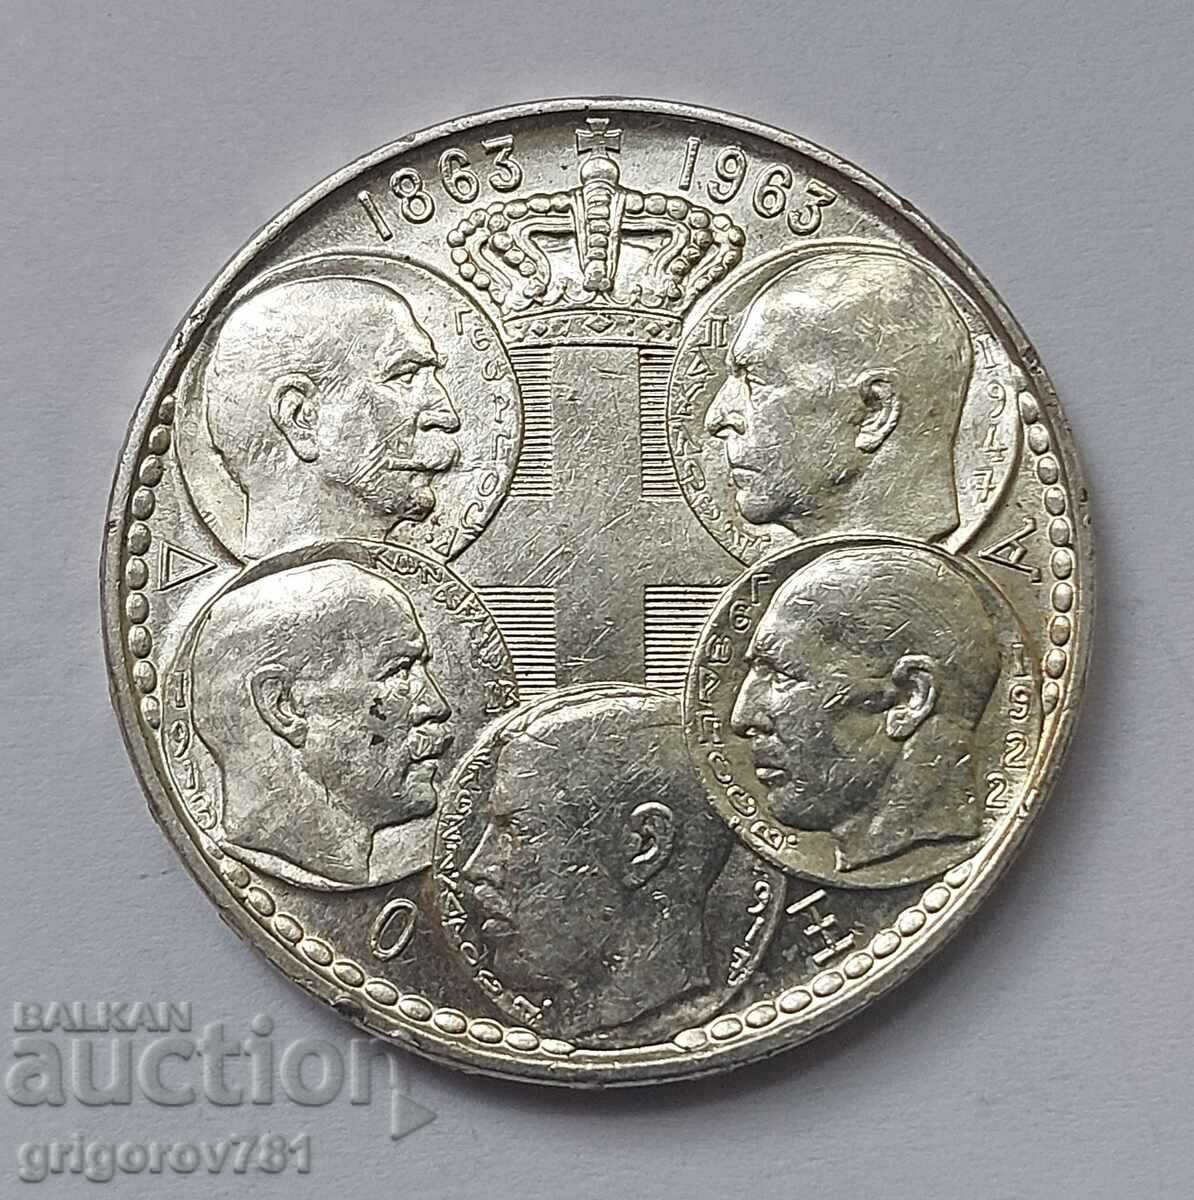 Ασήμι 30 δραχμών 1963 - ασημένιο νόμισμα #12